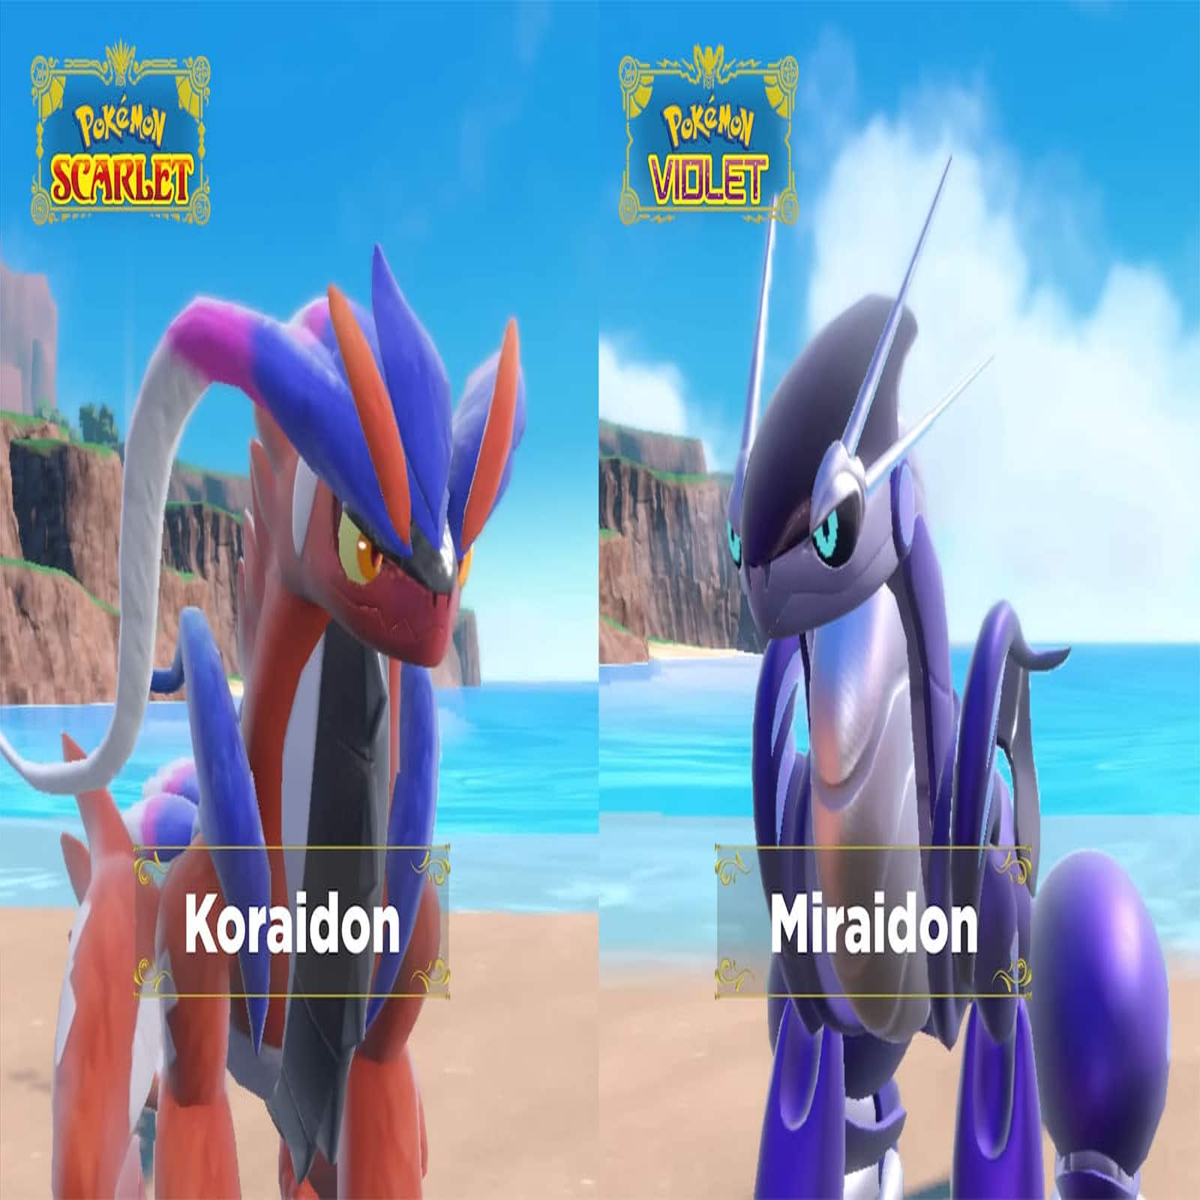 Koraidon and Miraidon In Pixelmon 